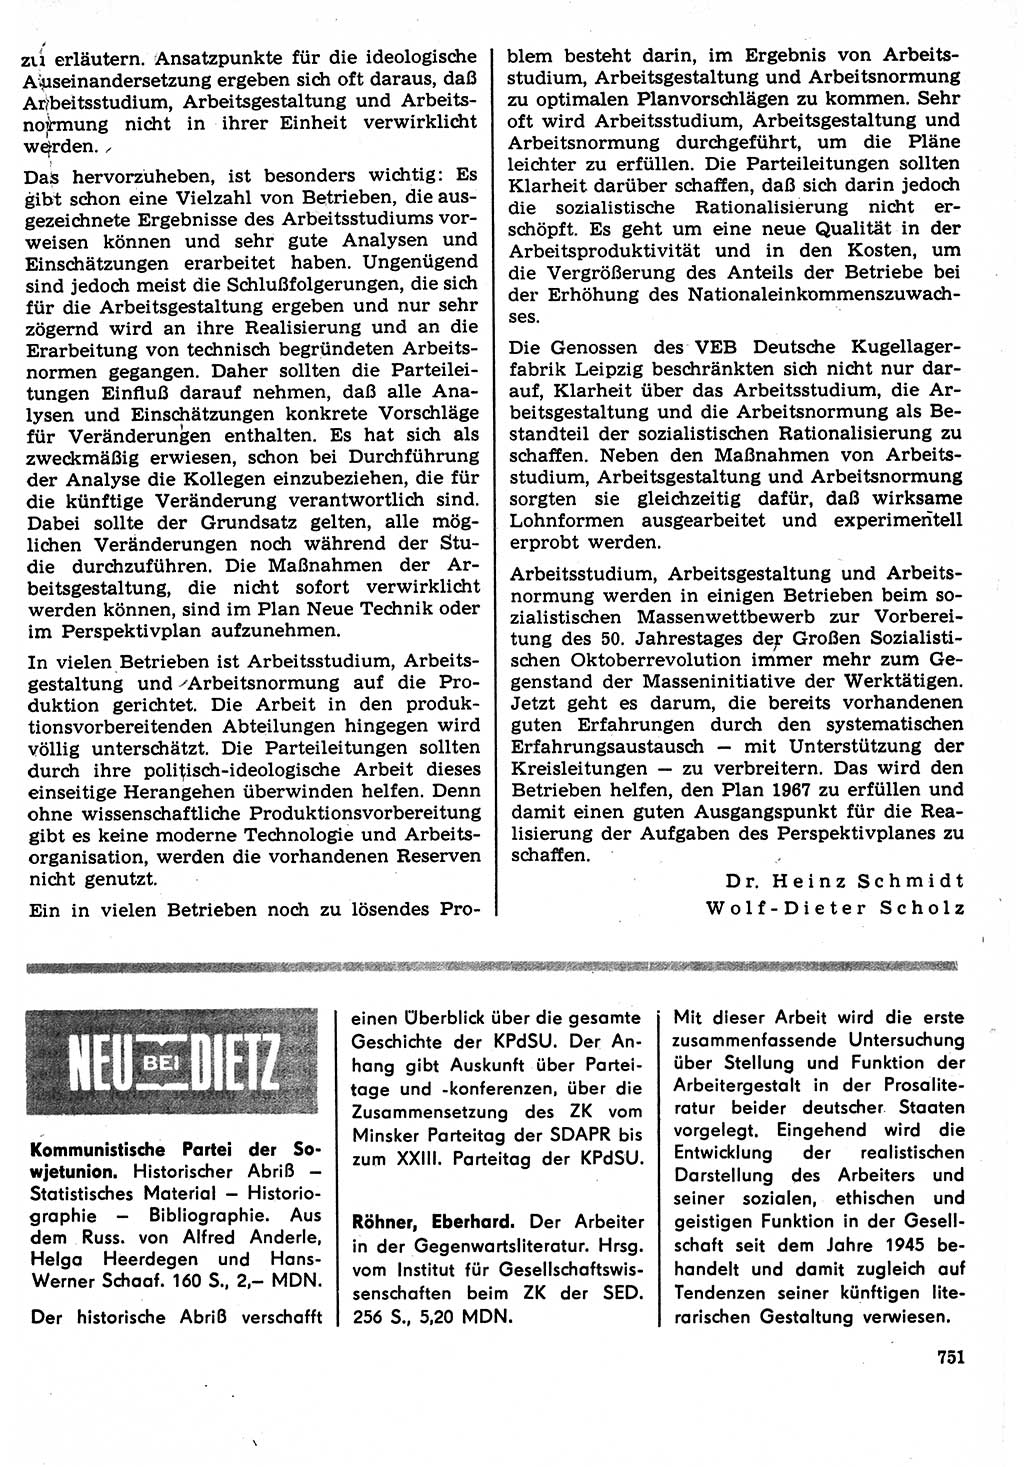 Neuer Weg (NW), Organ des Zentralkomitees (ZK) der SED (Sozialistische Einheitspartei Deutschlands) für Fragen des Parteilebens, 22. Jahrgang [Deutsche Demokratische Republik (DDR)] 1967, Seite 751 (NW ZK SED DDR 1967, S. 751)